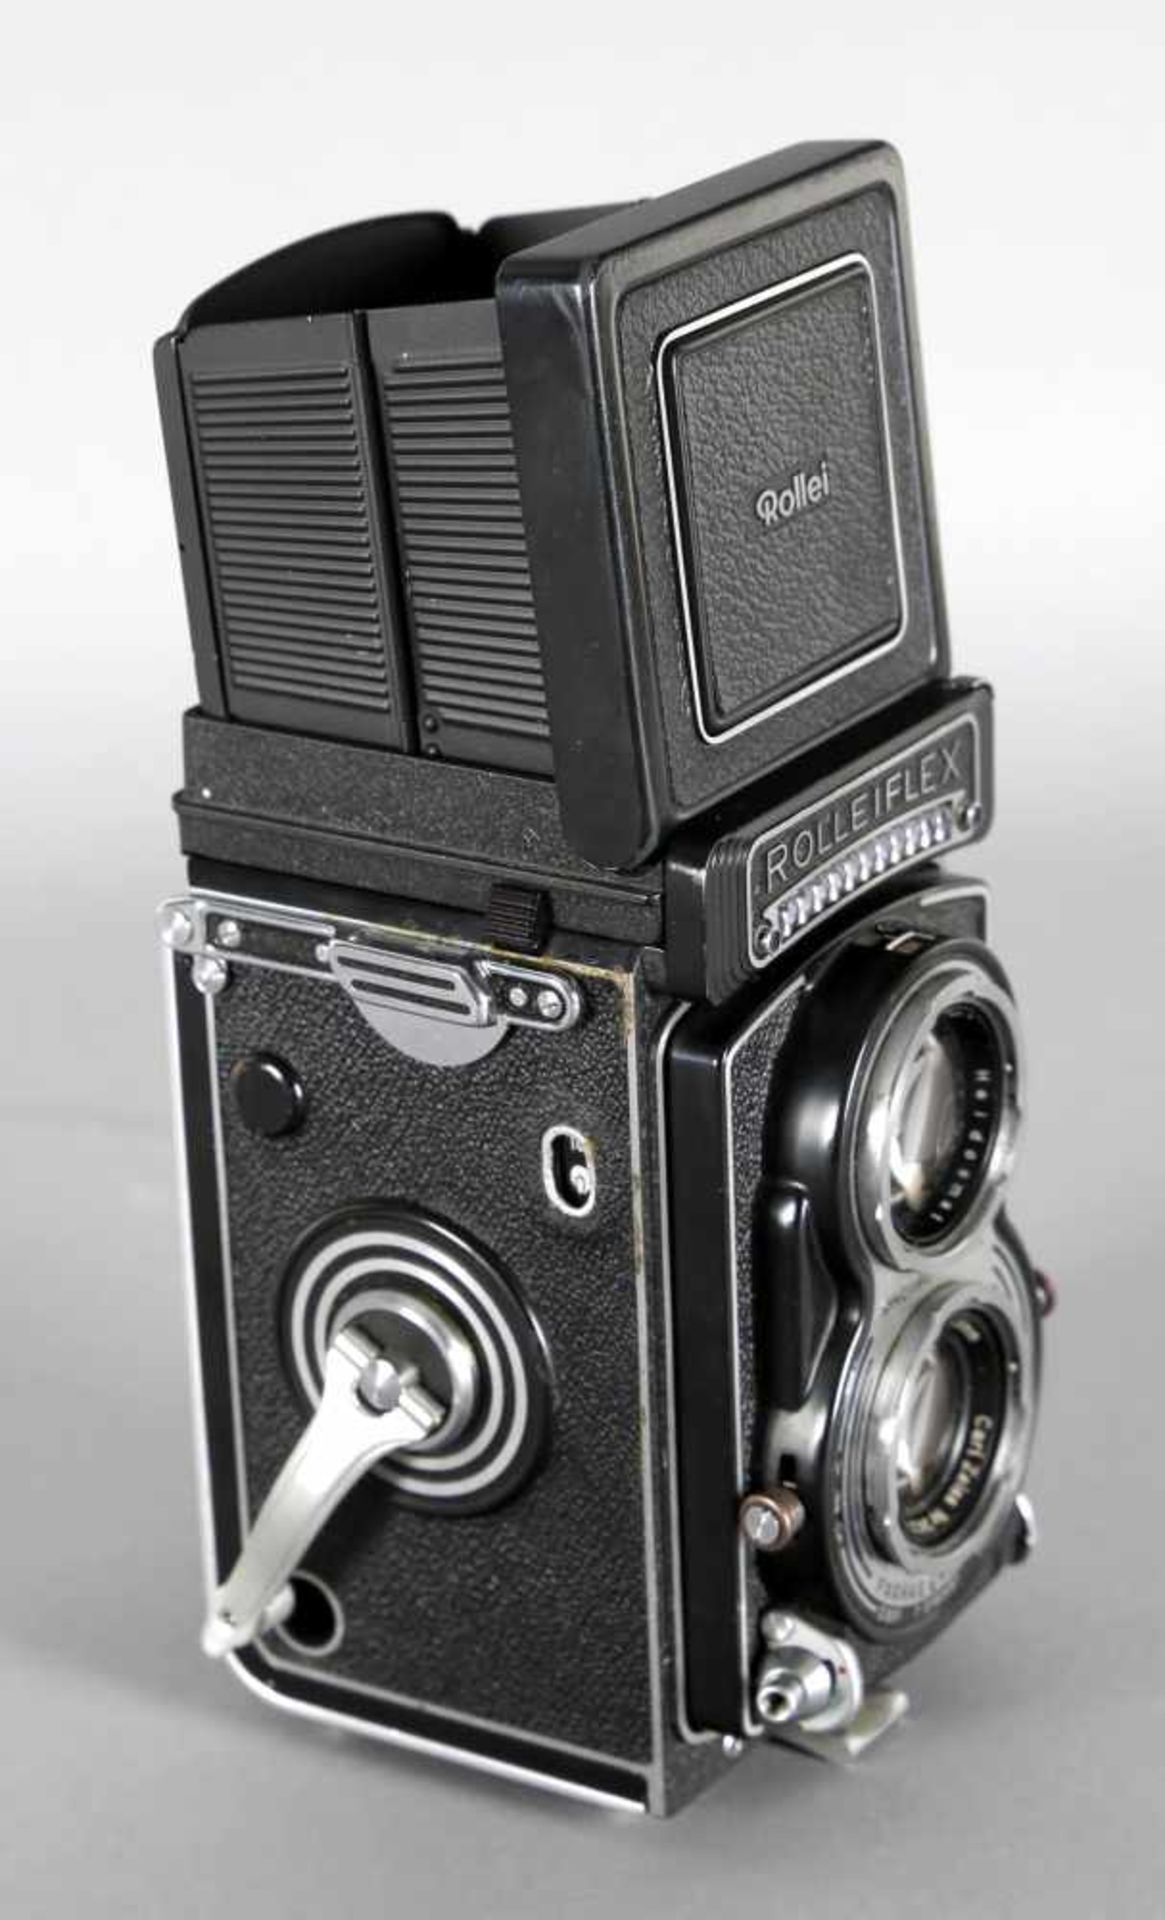 Rolleiflex-T-Kamera mit Prismensucher, Francke und Heidecke, 1961-1966Seriennummer: T 2182487, mit - Bild 2 aus 3